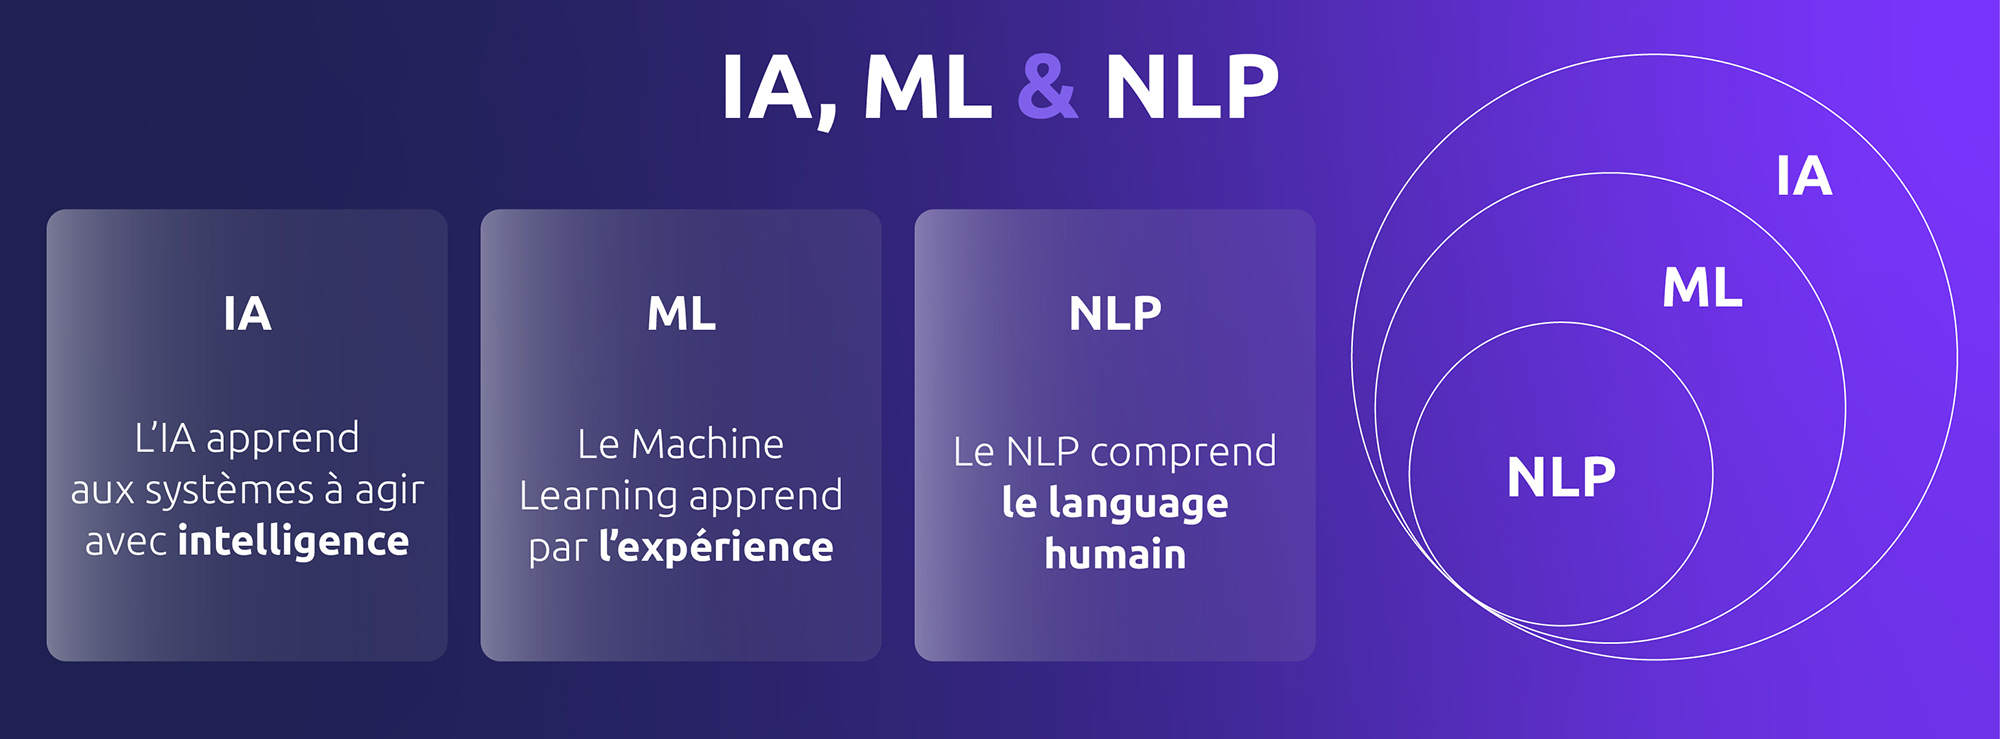 La relation entre le NLP, le machine learning et l'intelligence artificielle